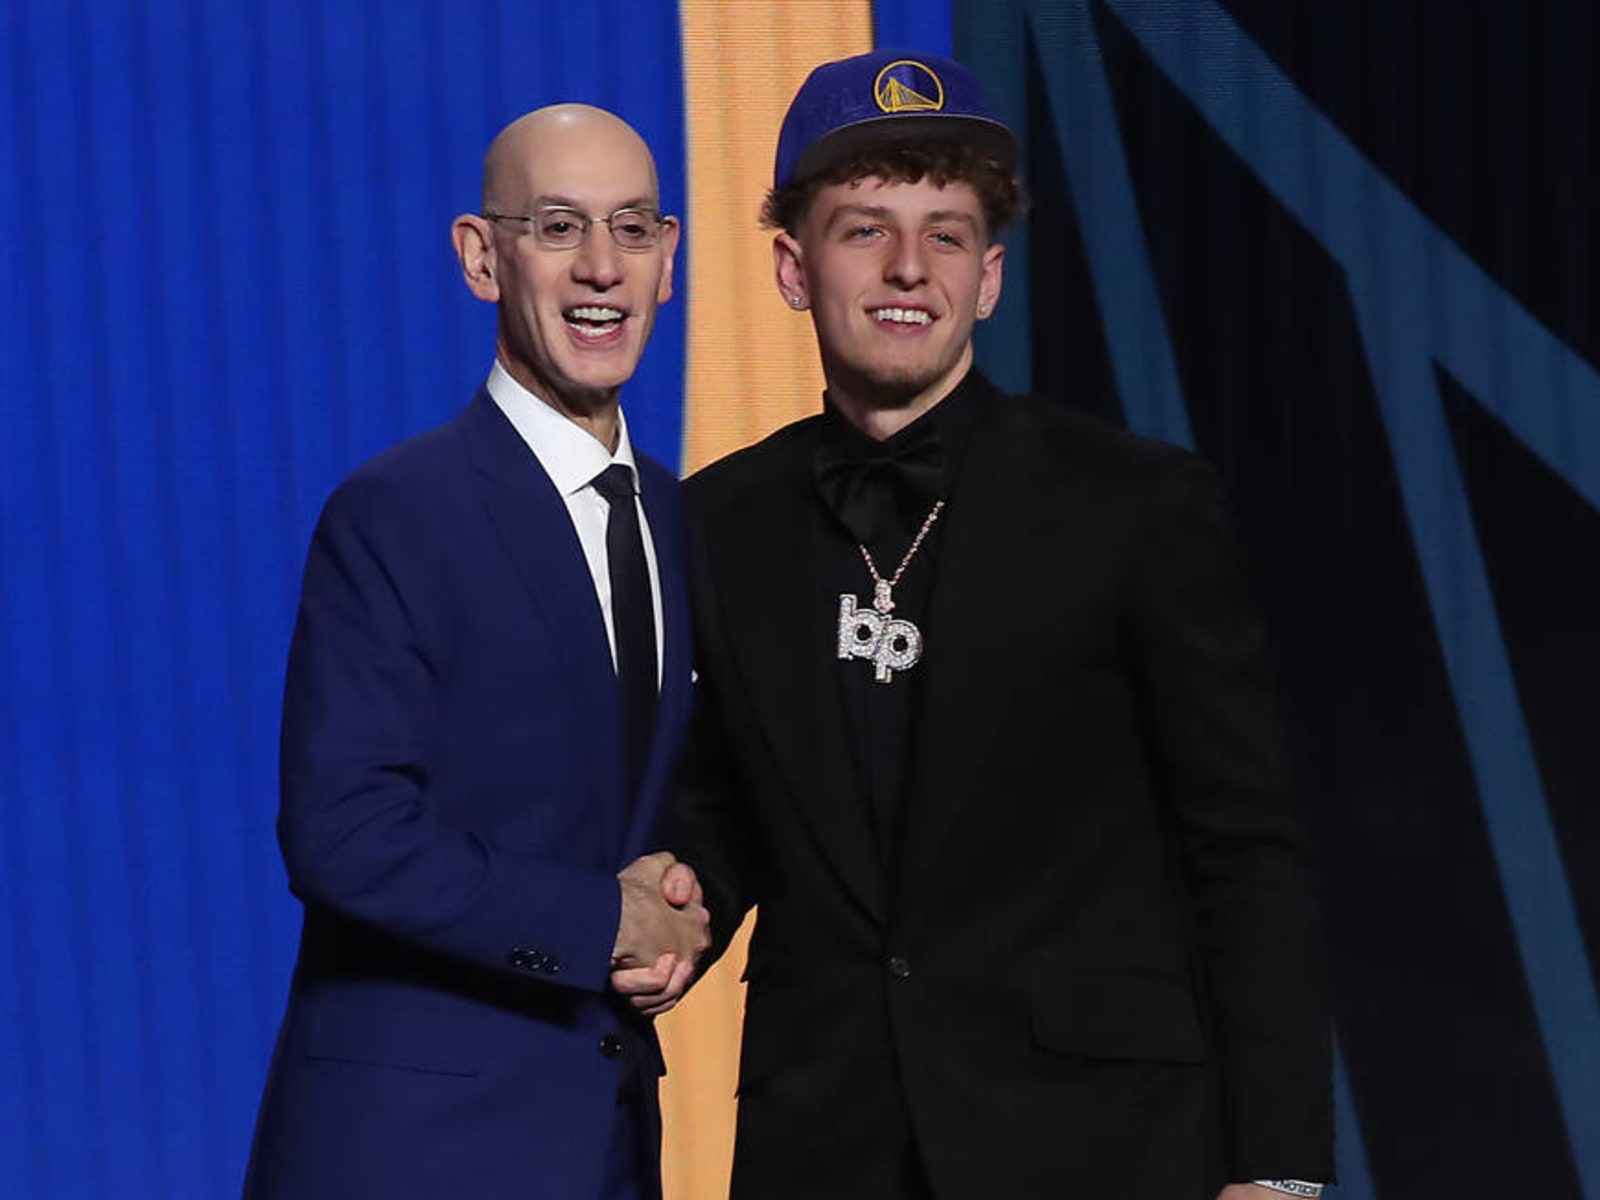 Brandin Podziemski latest Milwaukee player to be drafted by Warriors